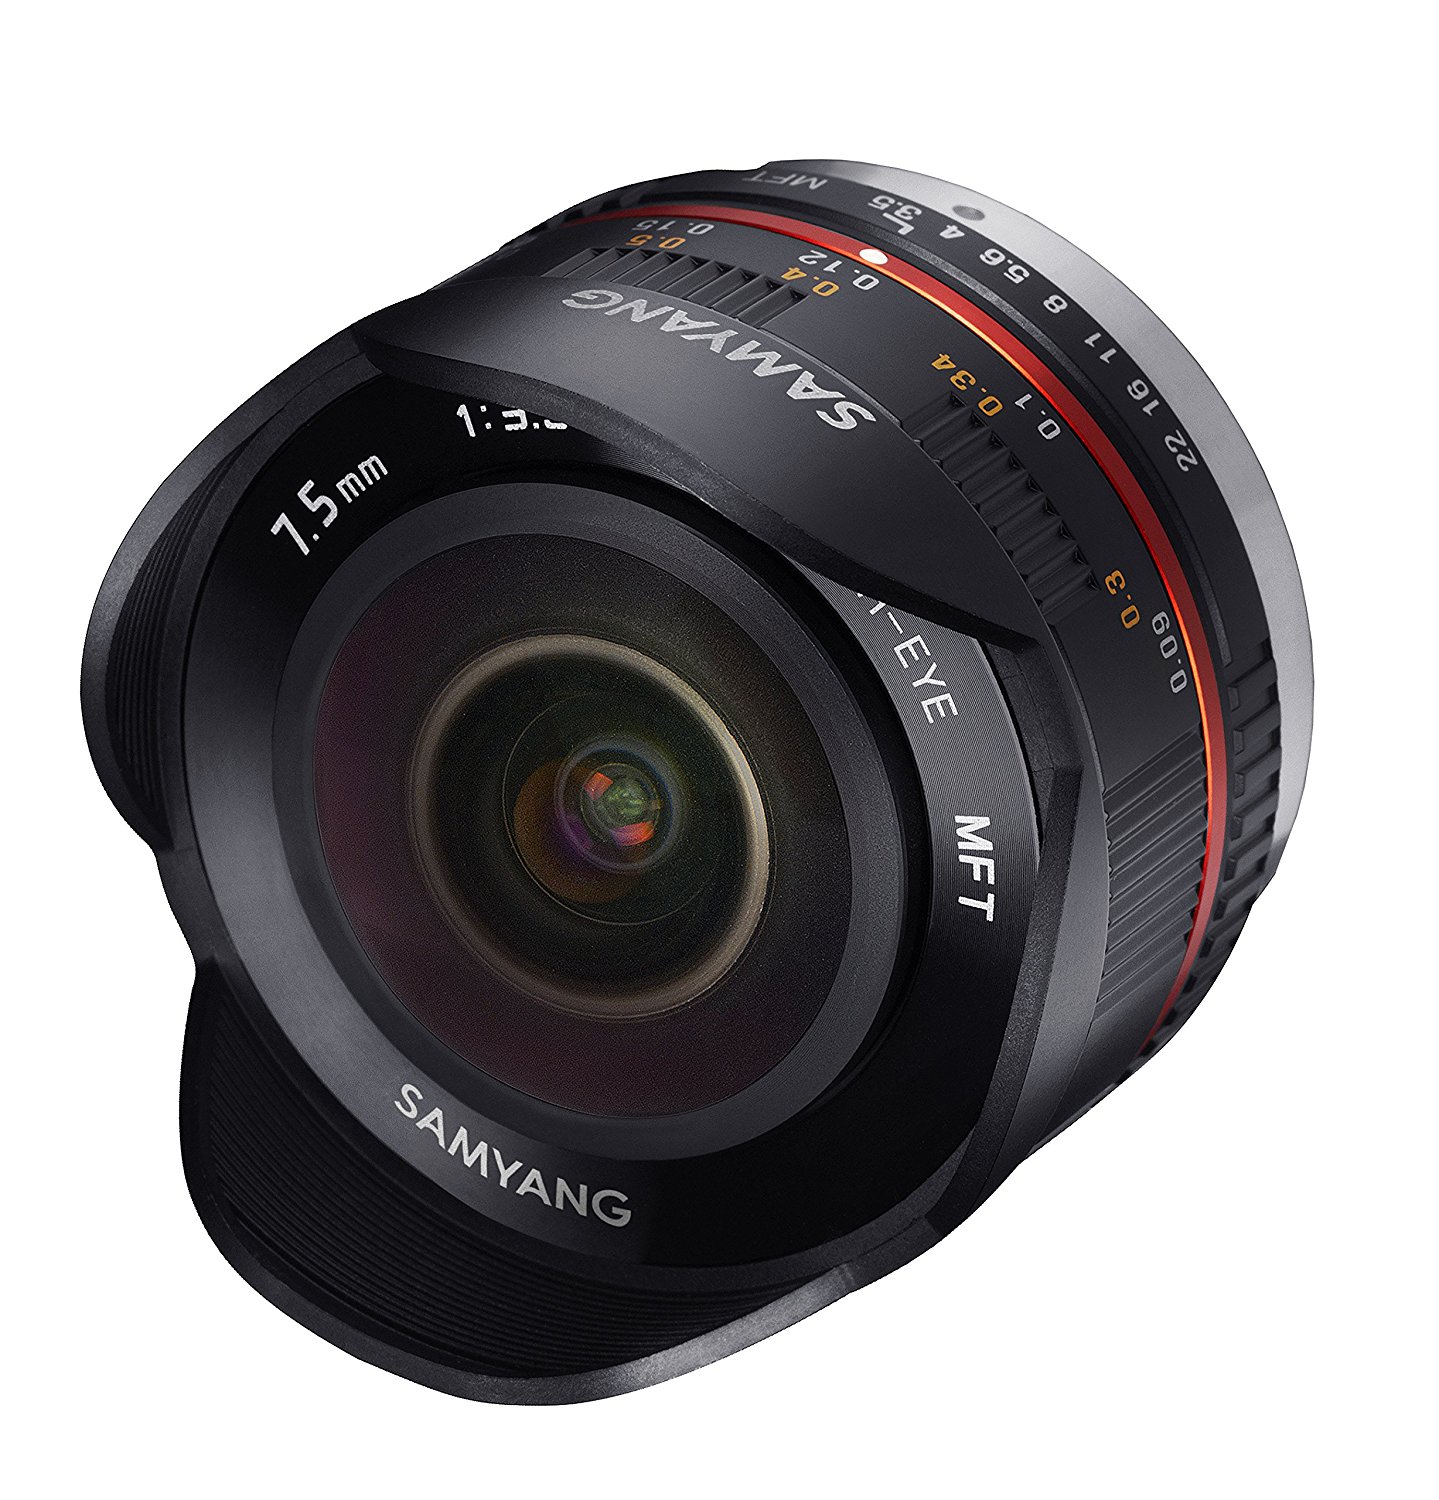 Samyang Fisheye F3.5 Manual Focus Lens for Micro 4/3